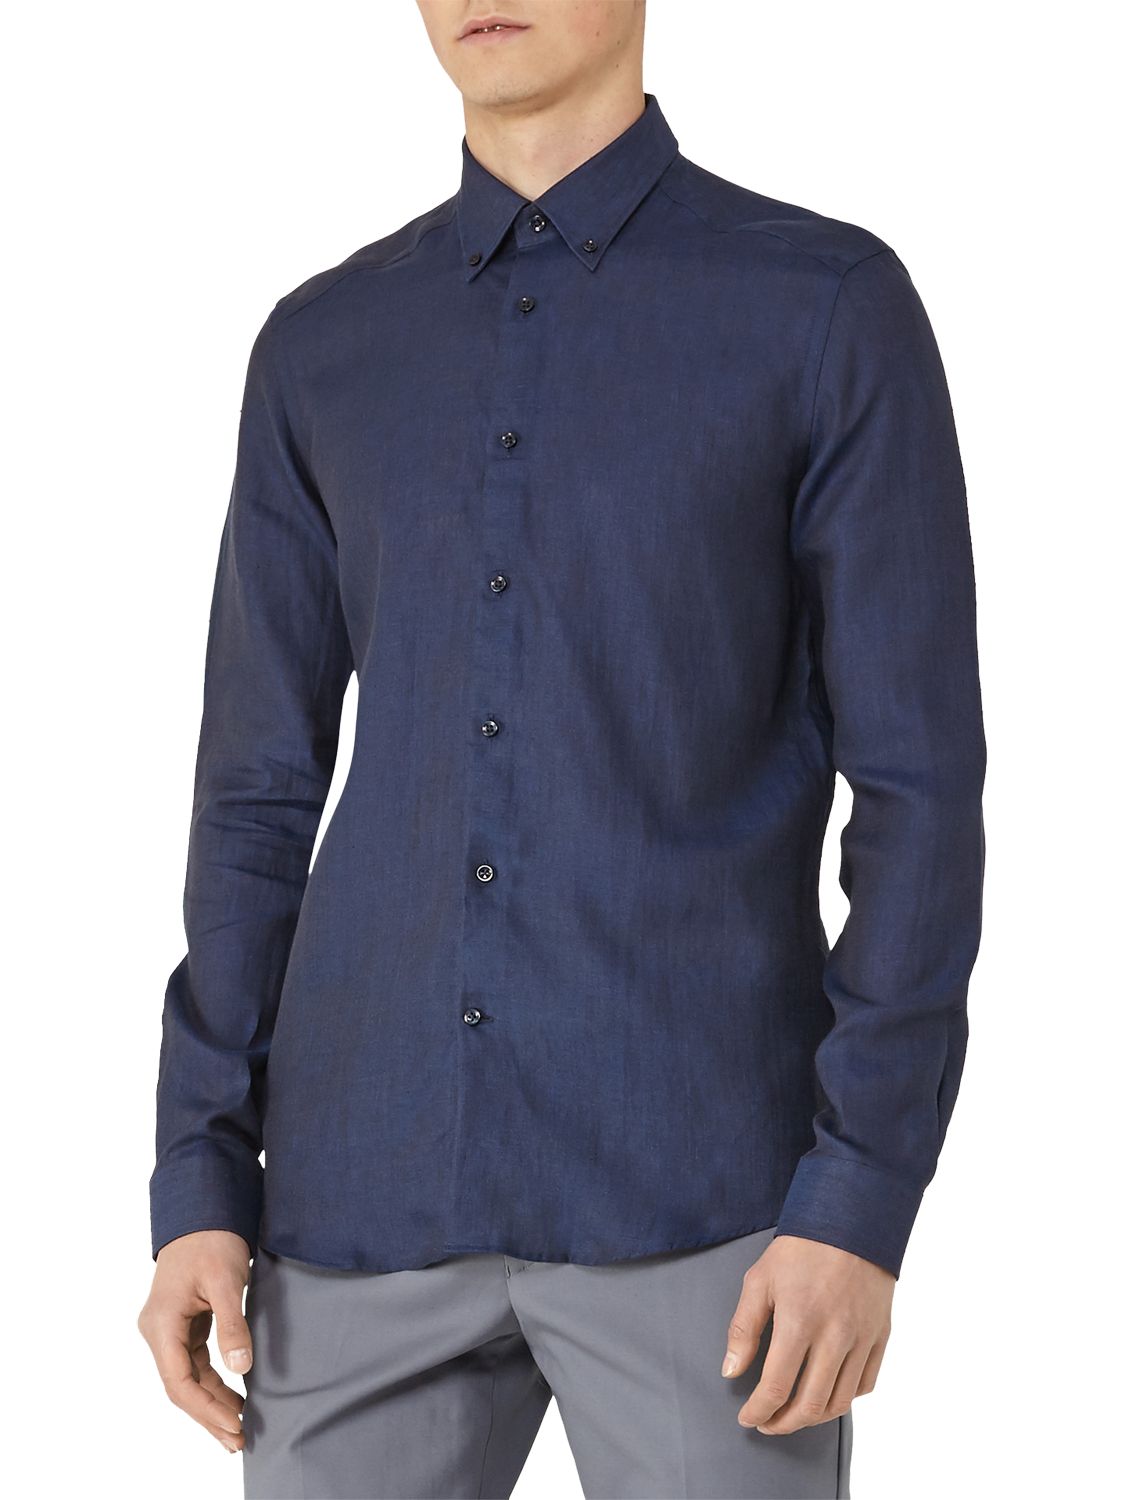 Reiss Nicky Long Sleeve Linen Shirt, Navy, XL